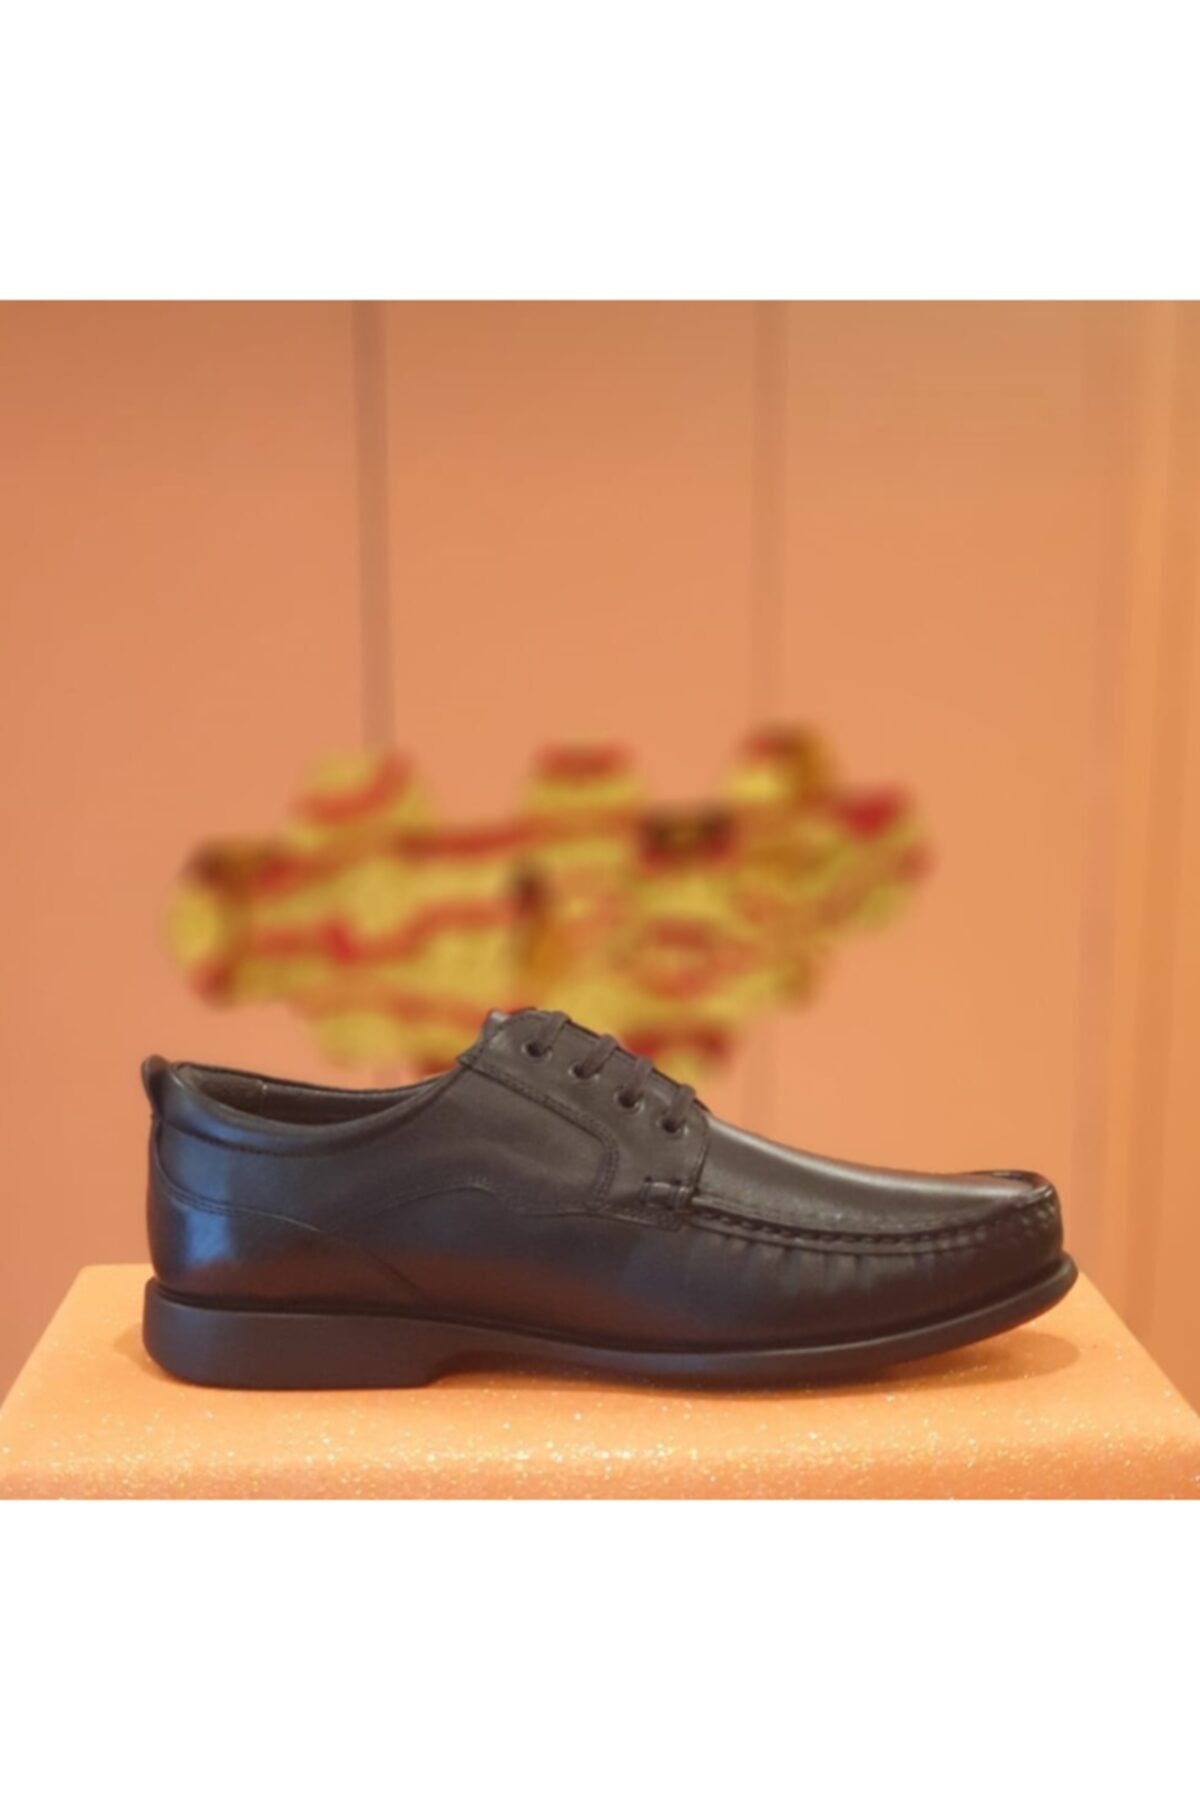 کفش رسمی مردانه سیاه مارک cabani 82236 sv